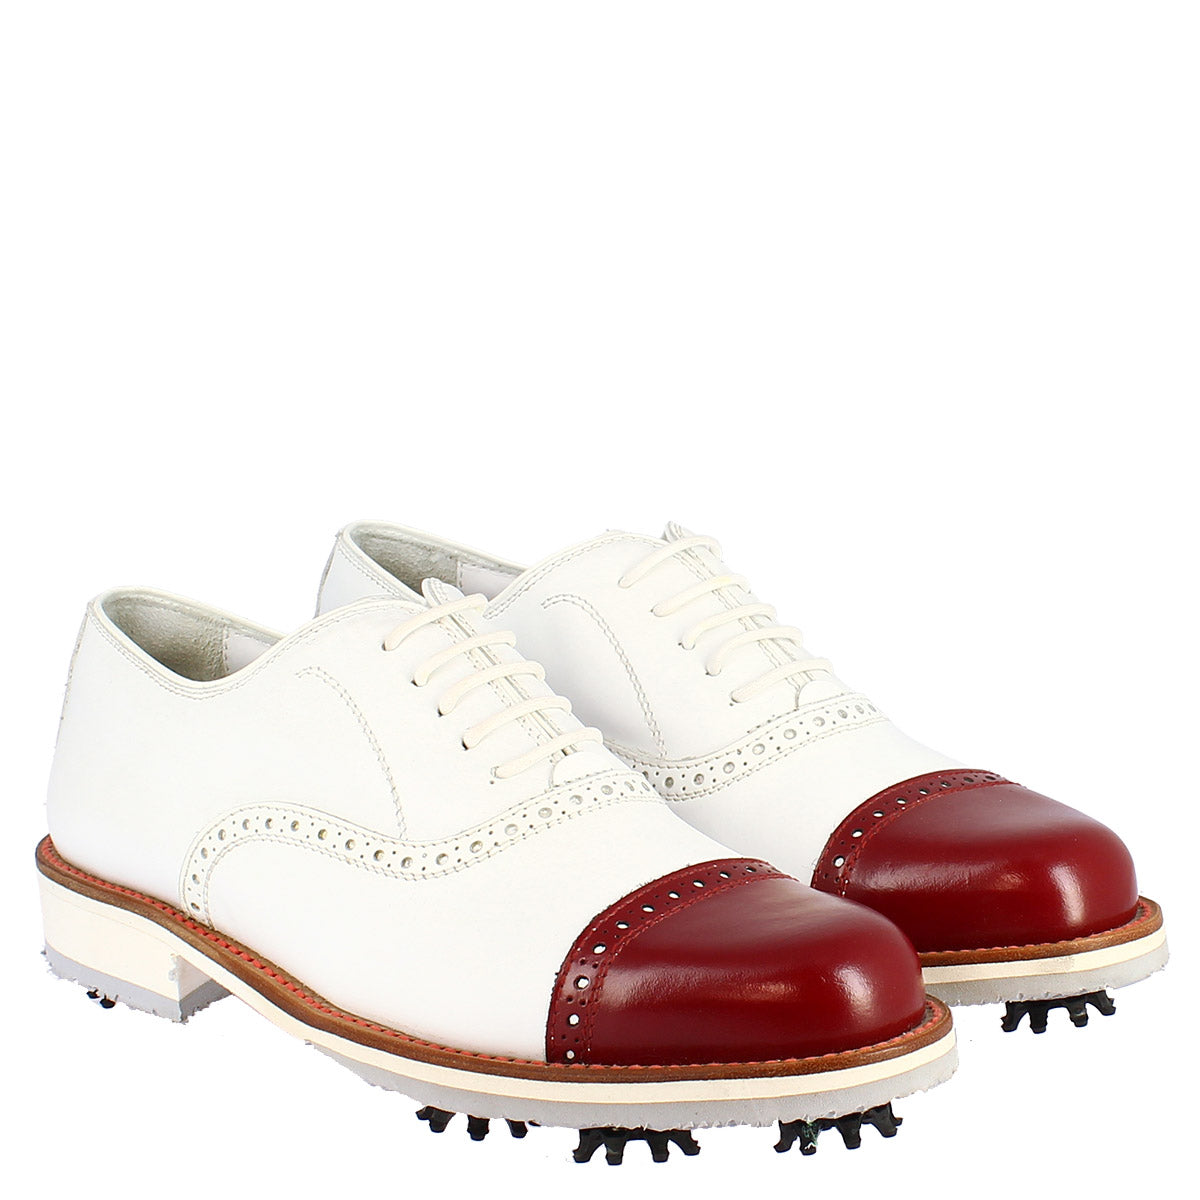 Scarpe golf donna artigianali in pelle bianco con puntale rosso